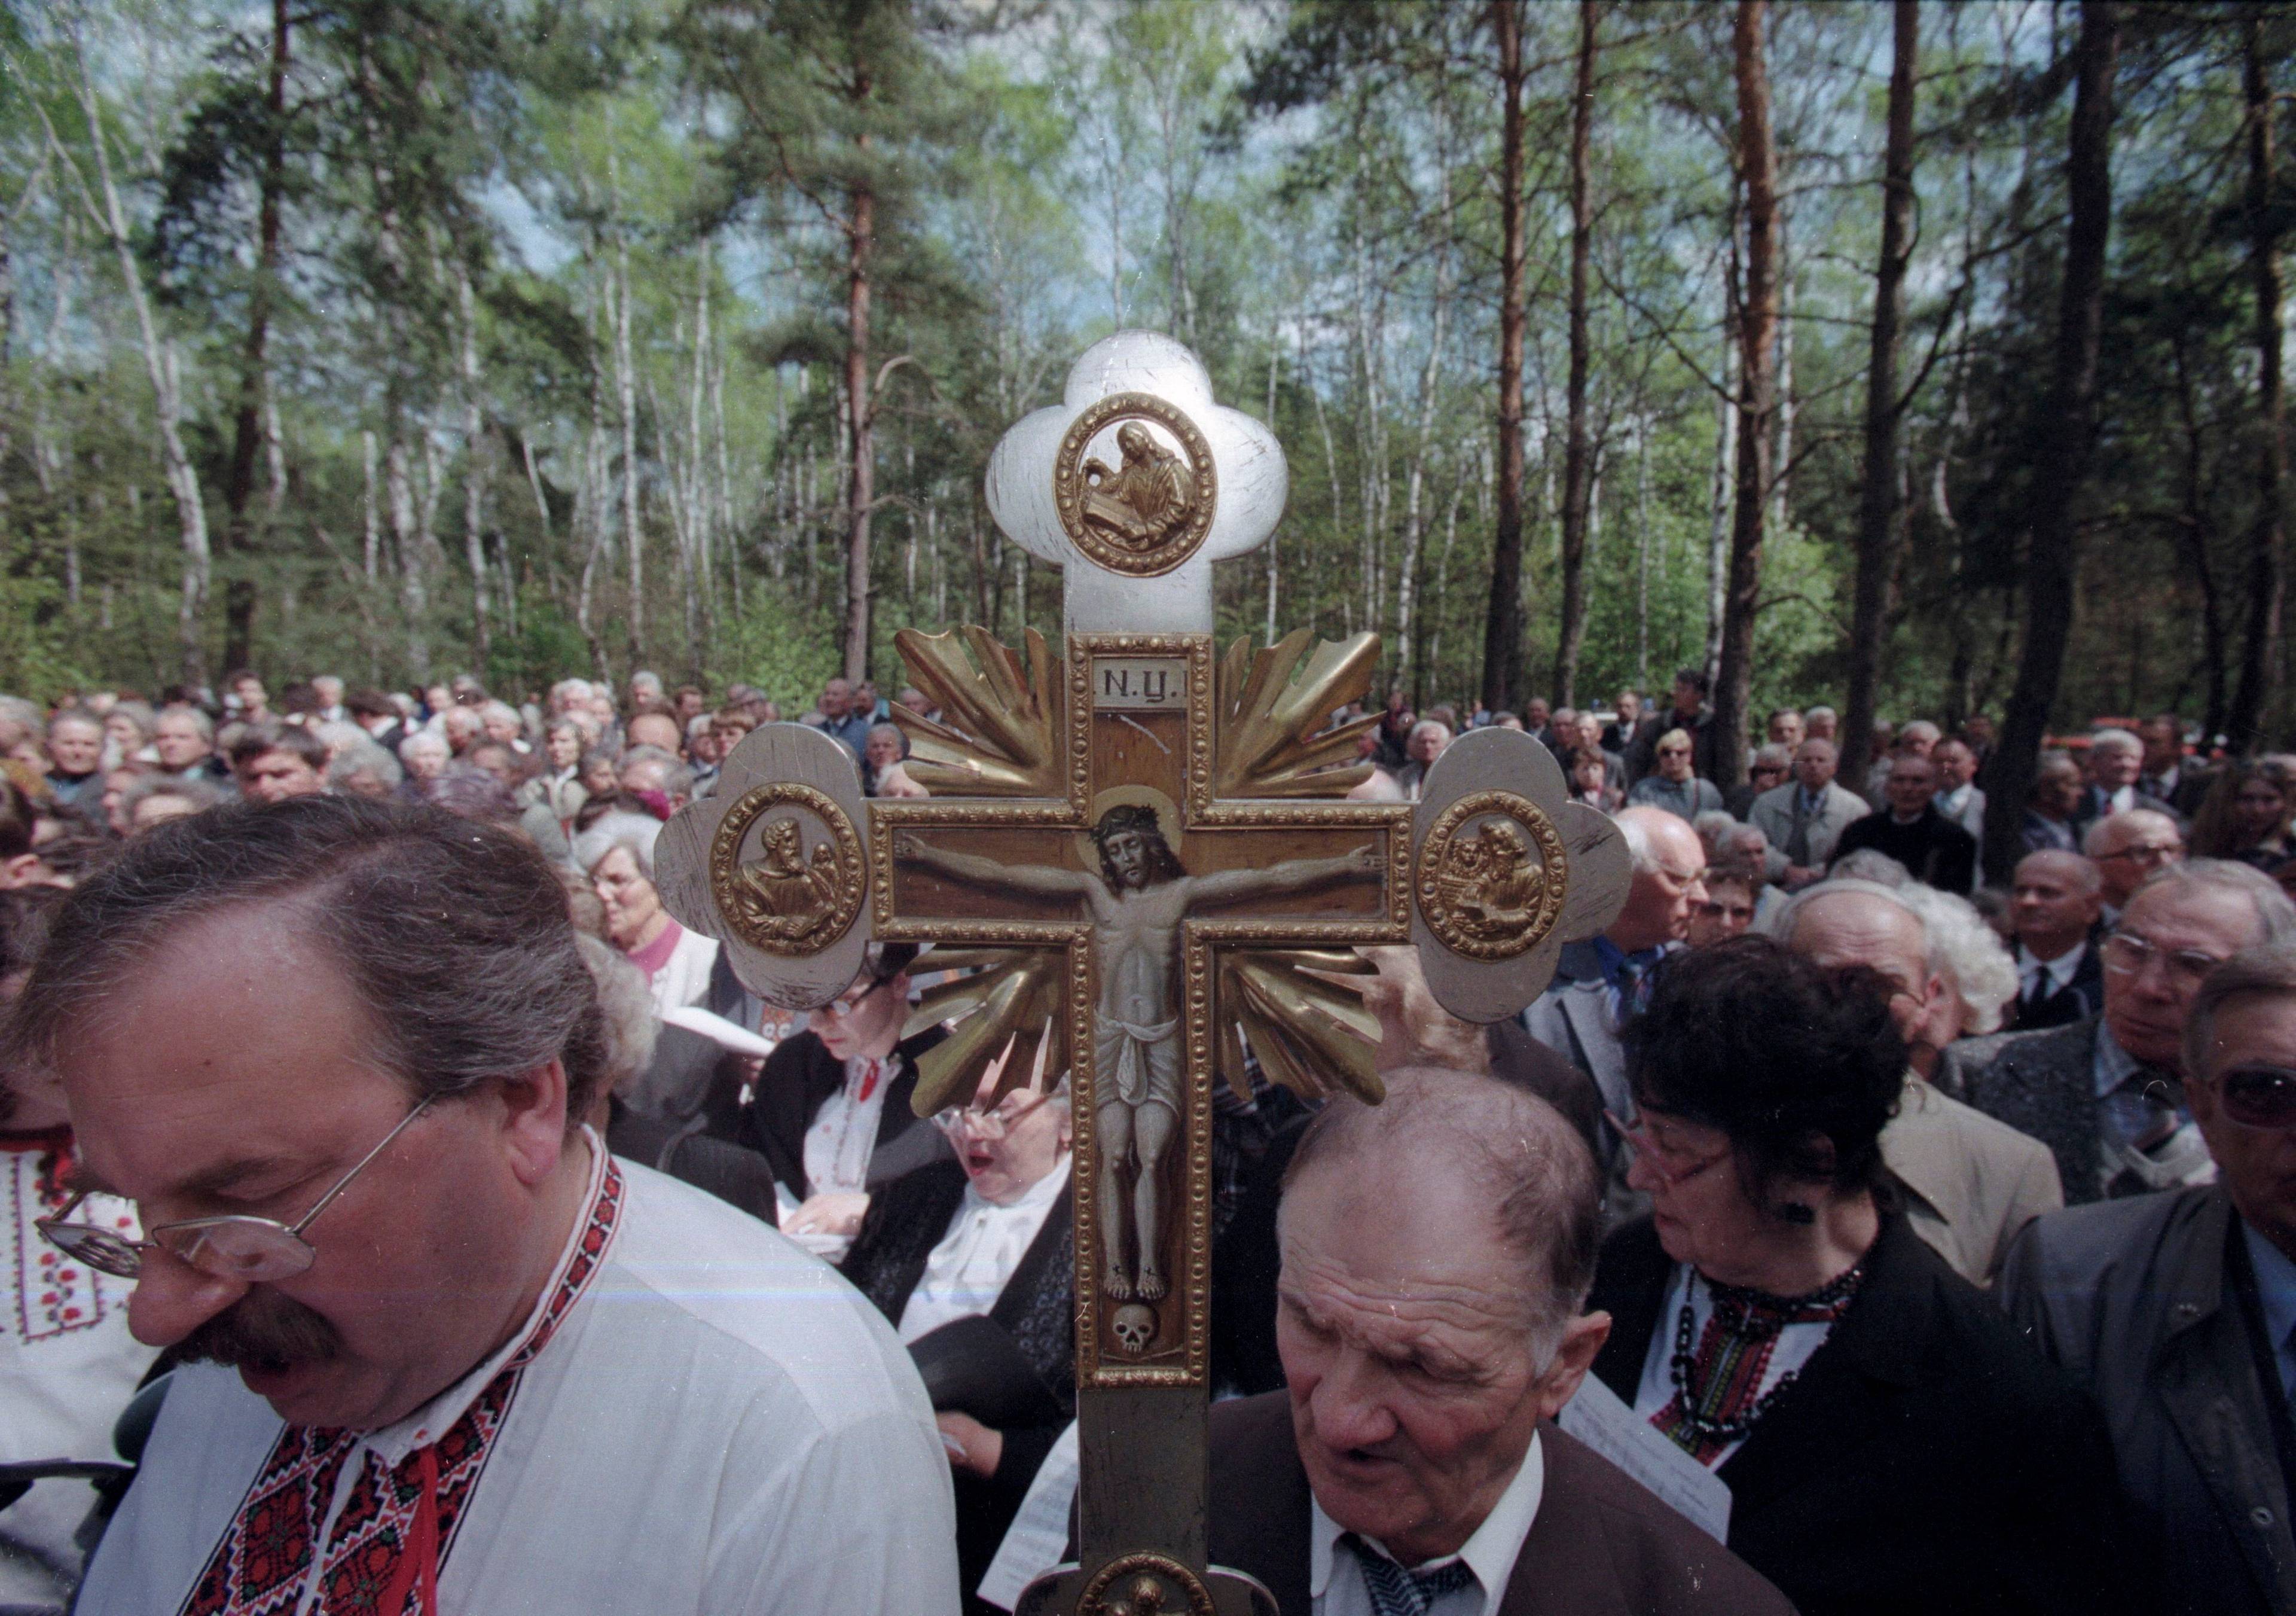 Ludzie w lesie zgromadzeni po prawosławnym krzyżem